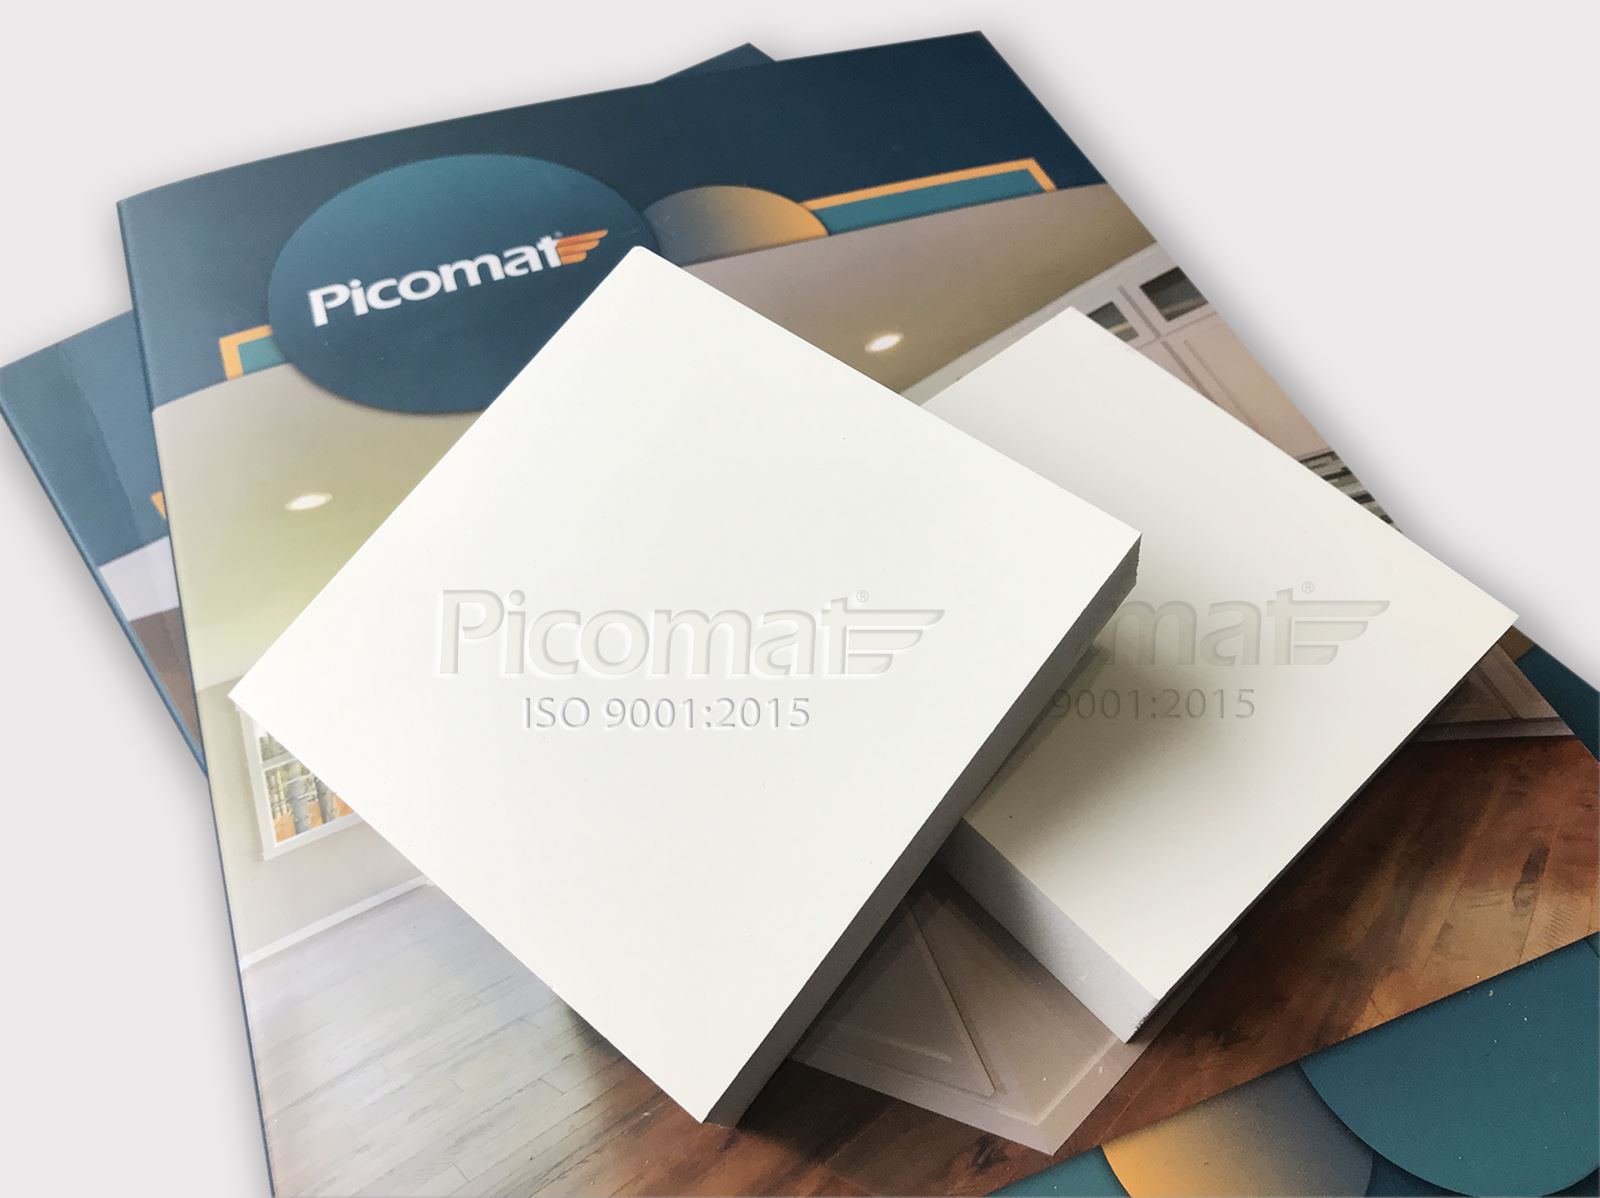 Tủ bếp nhựa Picomat là sản phẩm chất lượng và tiện nghi giúp cho không gian bếp nhà bạn trở nên hoàn hảo hơn. Đến với Picomat, bạn sẽ tìm thấy nhiều lựa chọn tủ bếp nhựa phù hợp với yêu cầu và ngân sách của gia đình.